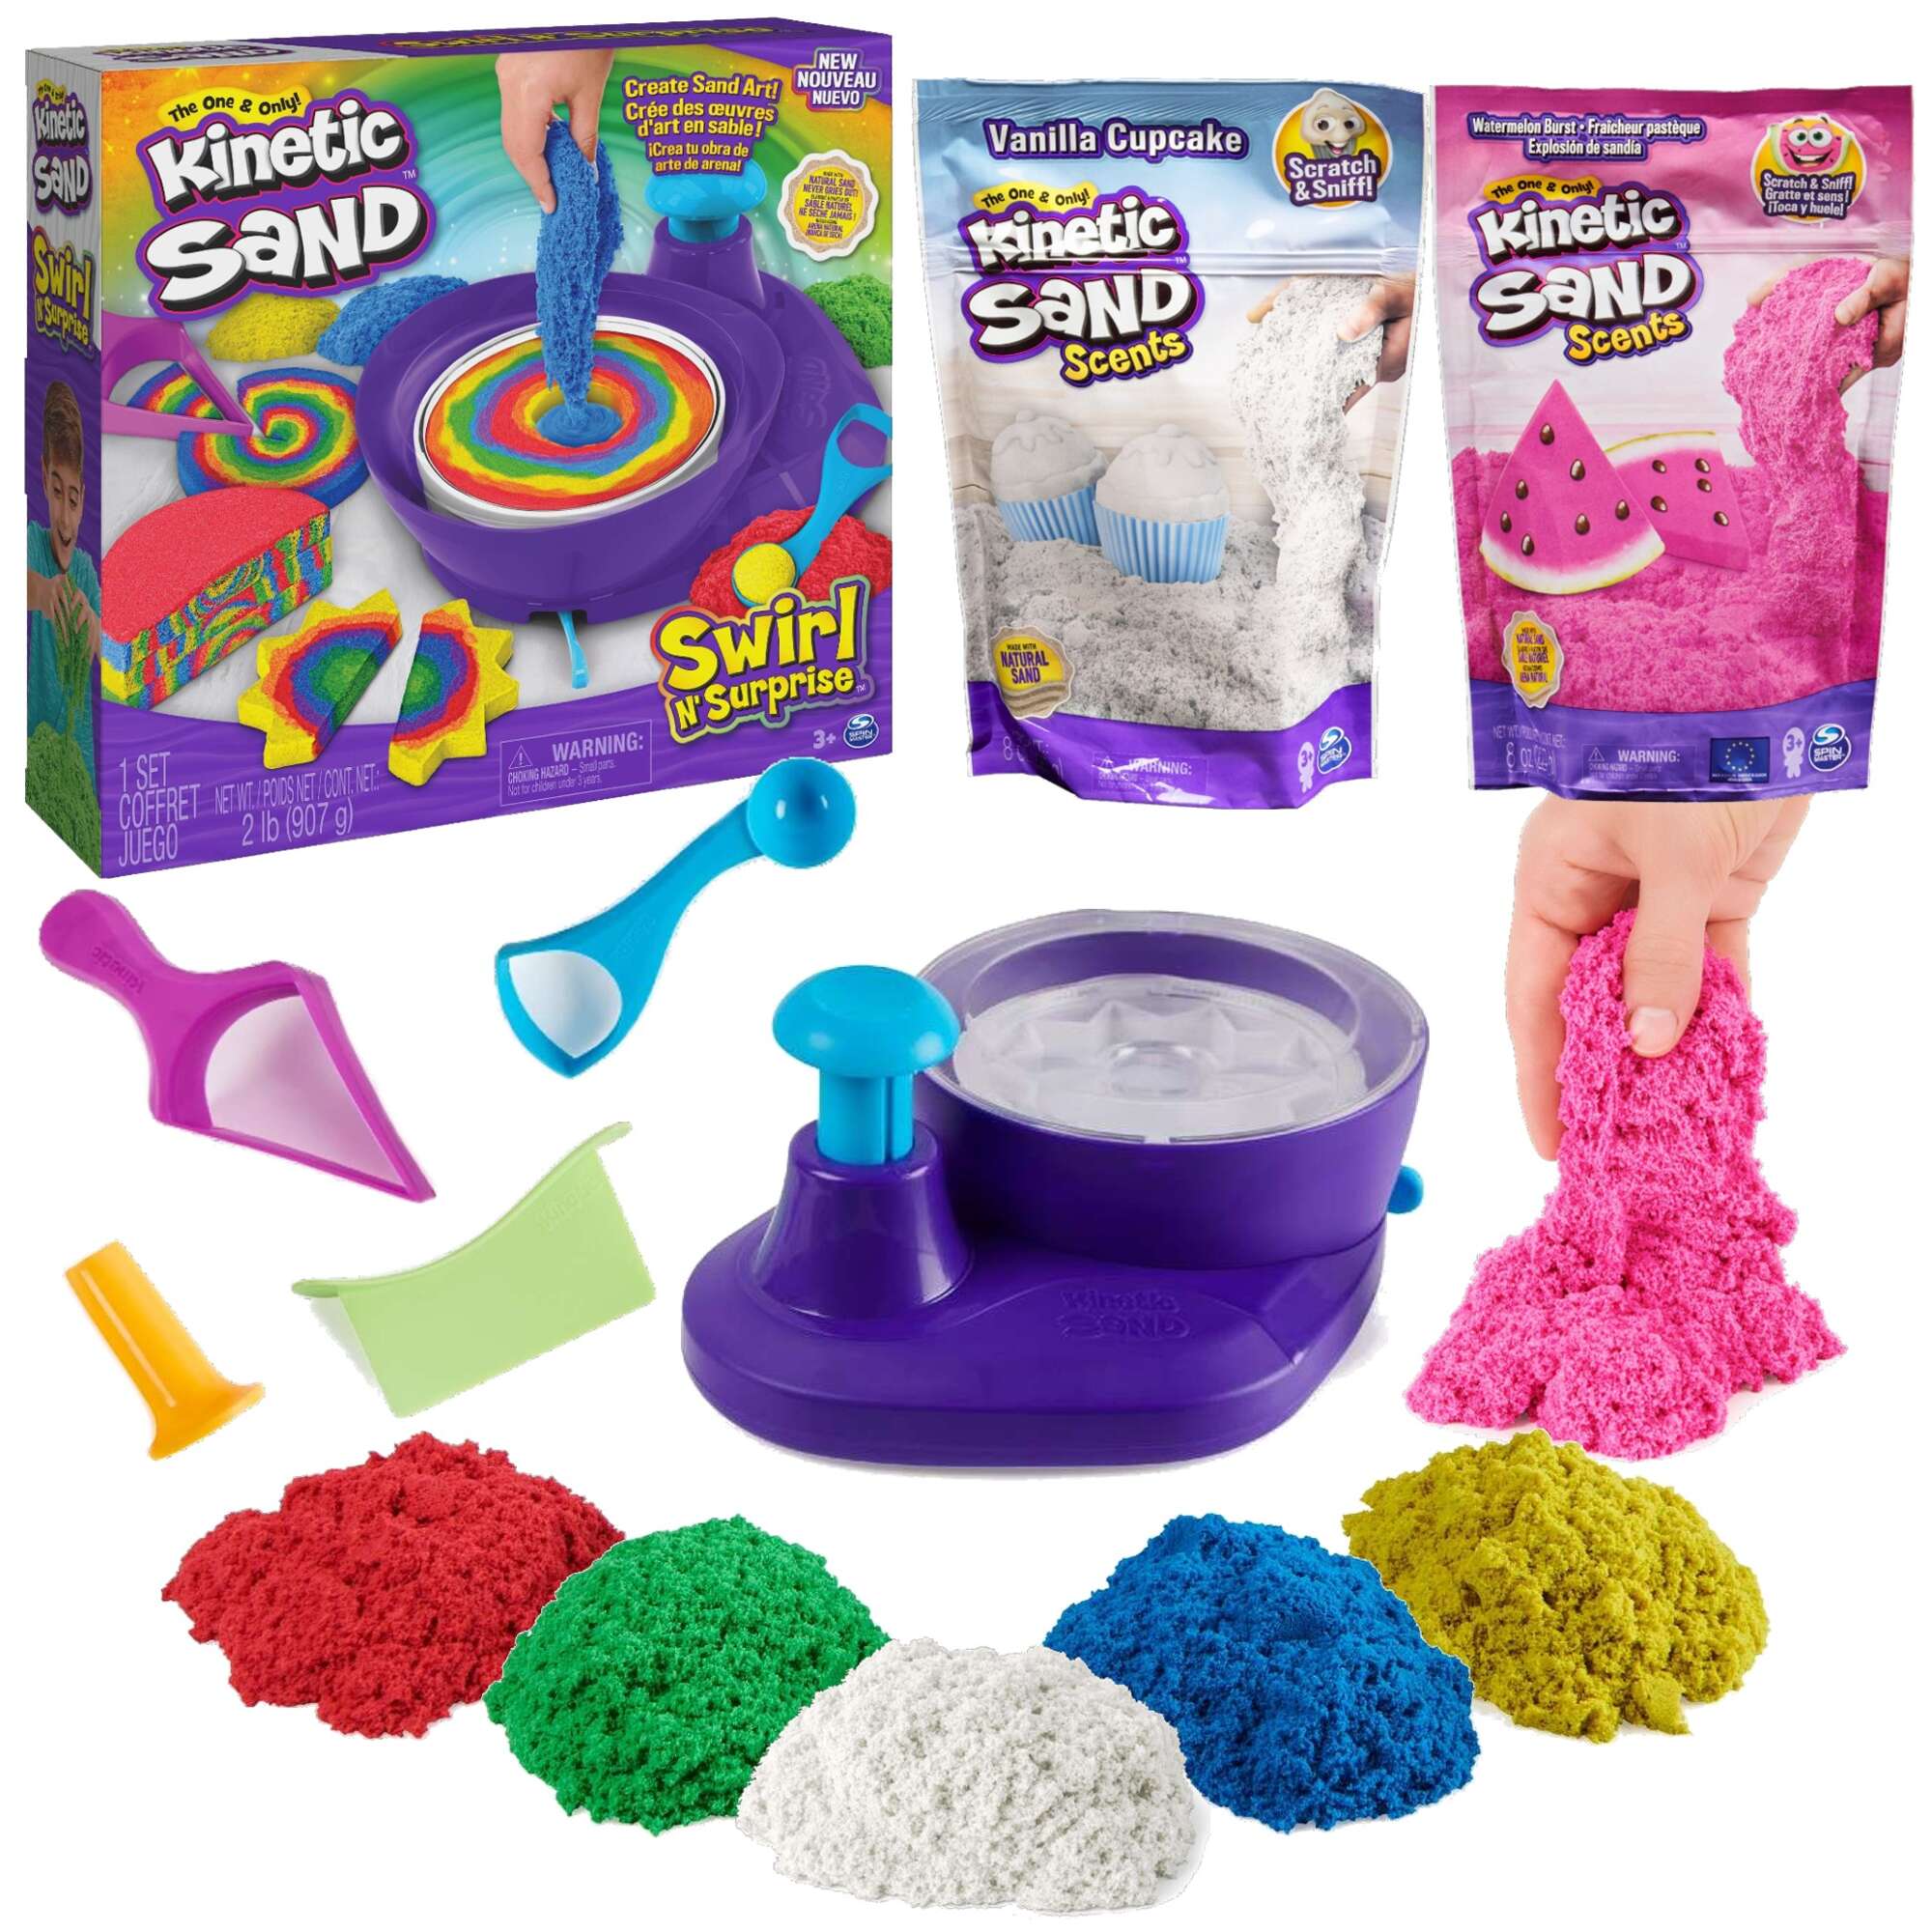 Zestaw Plastyczny Kinetic Sand kolorowy Piasek kinetyczny 907 g + Scents Dough Crazy biay waniliowy, rowy arbuzowy